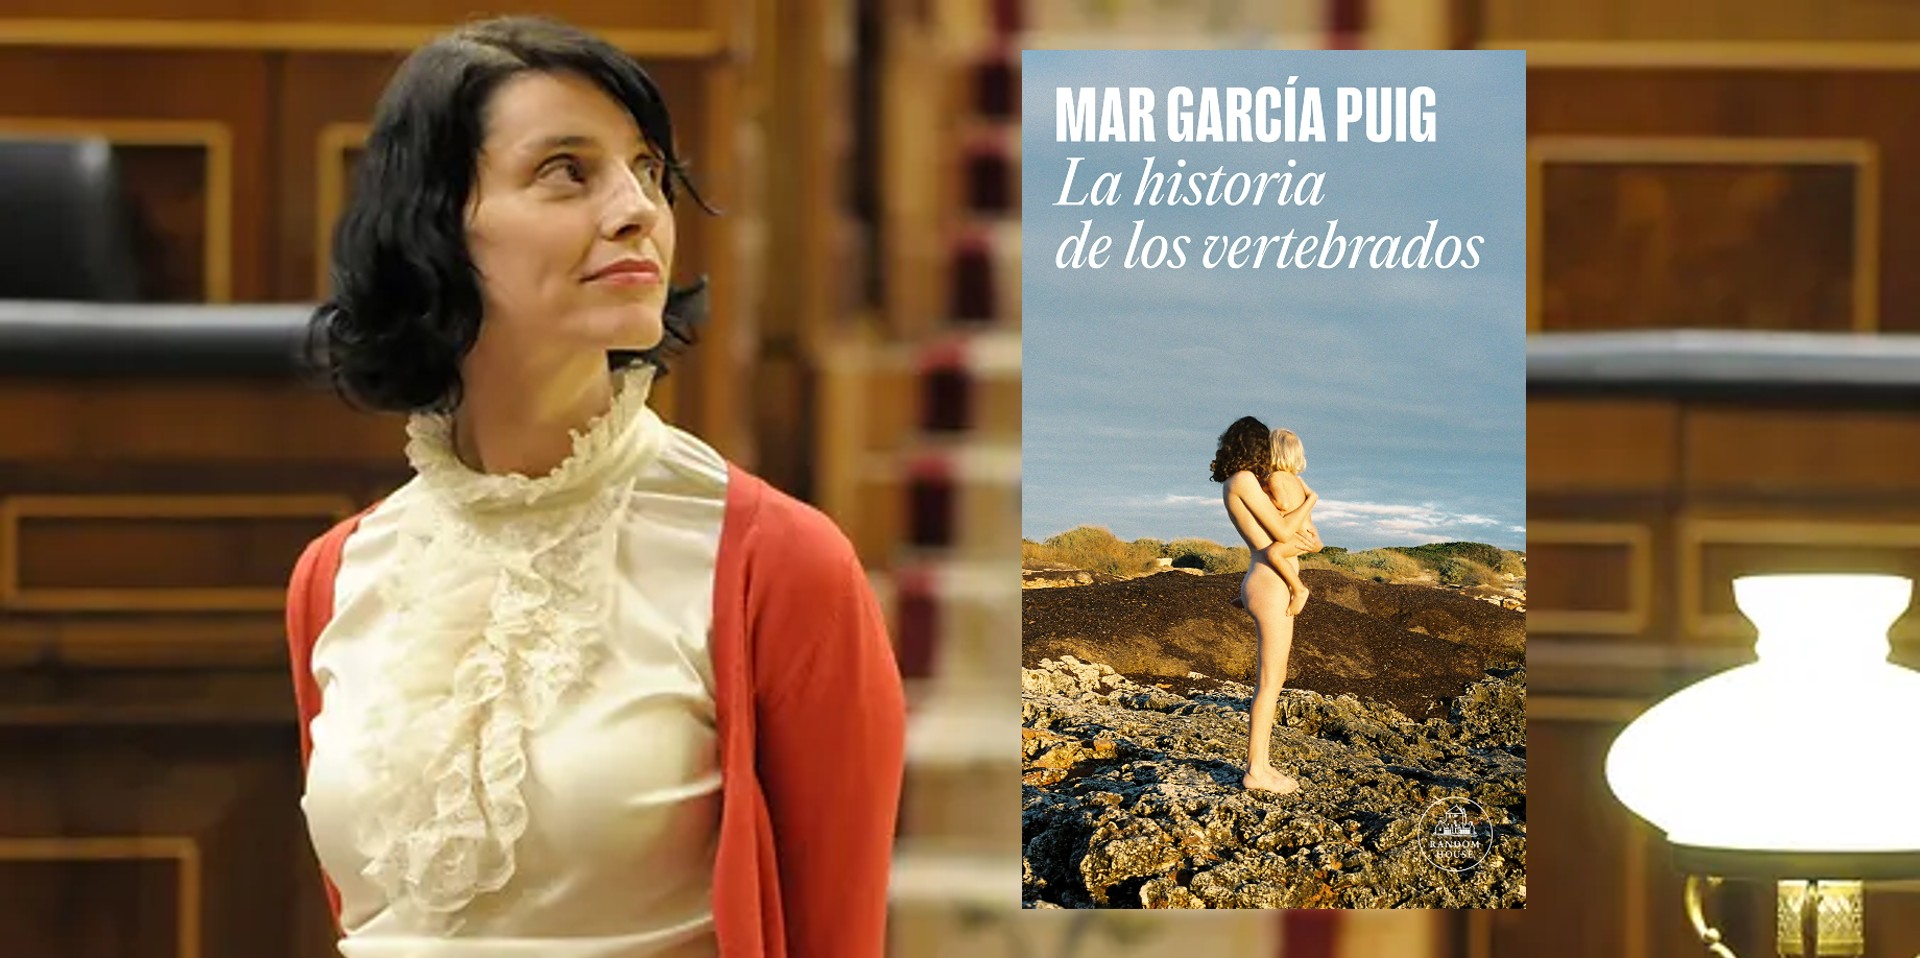 Mar García Puig: la diputada española debuta como escritora narrando su experiencia como madre y el origen de su “locura